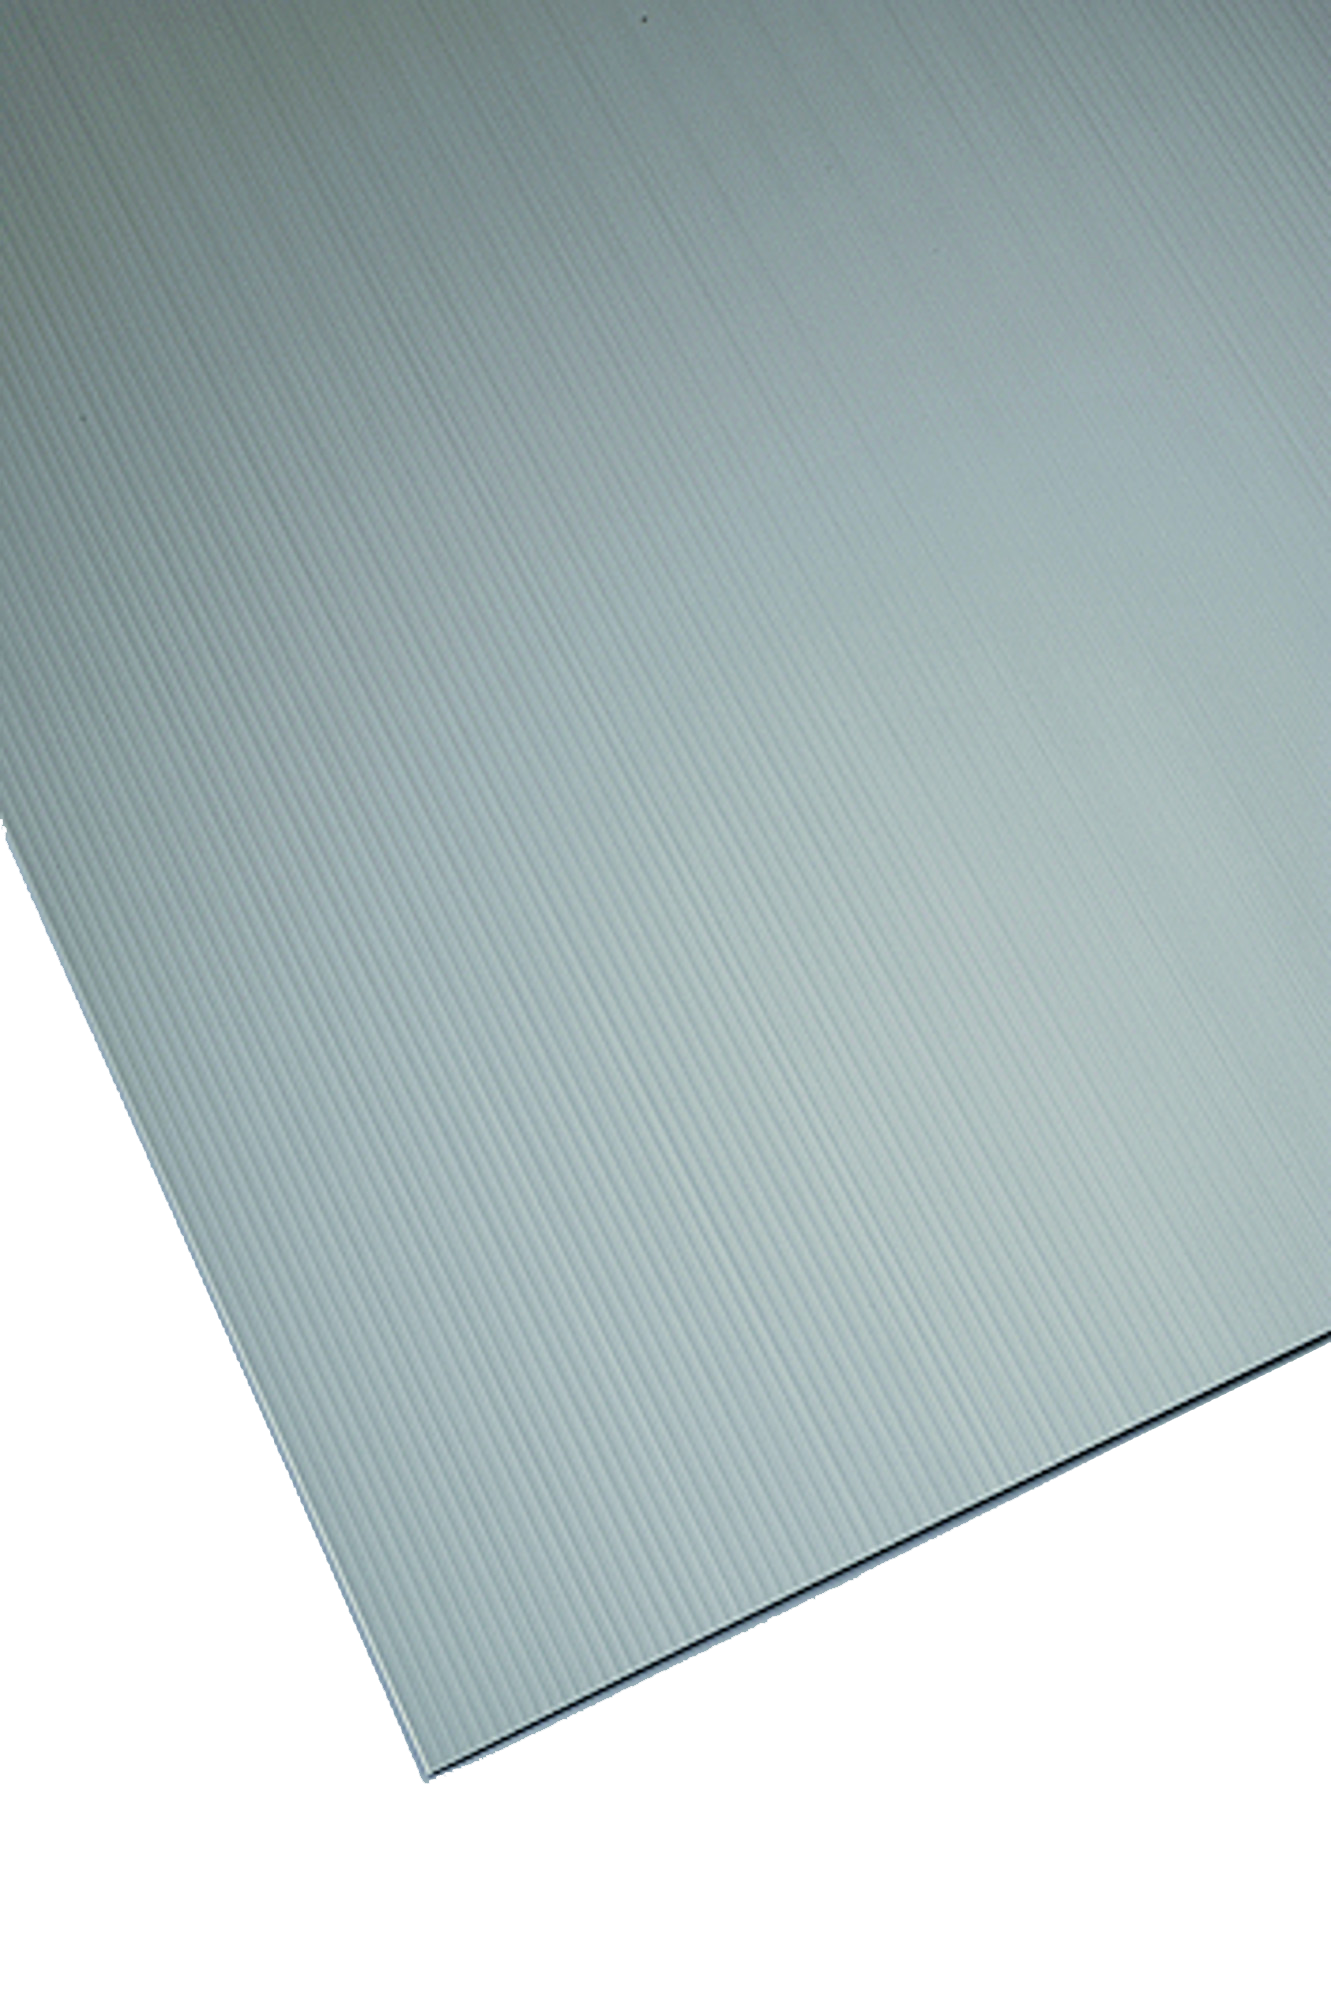 Placa de polipropileno gris opaco de 2.5 mm de grosor y 150x50cm